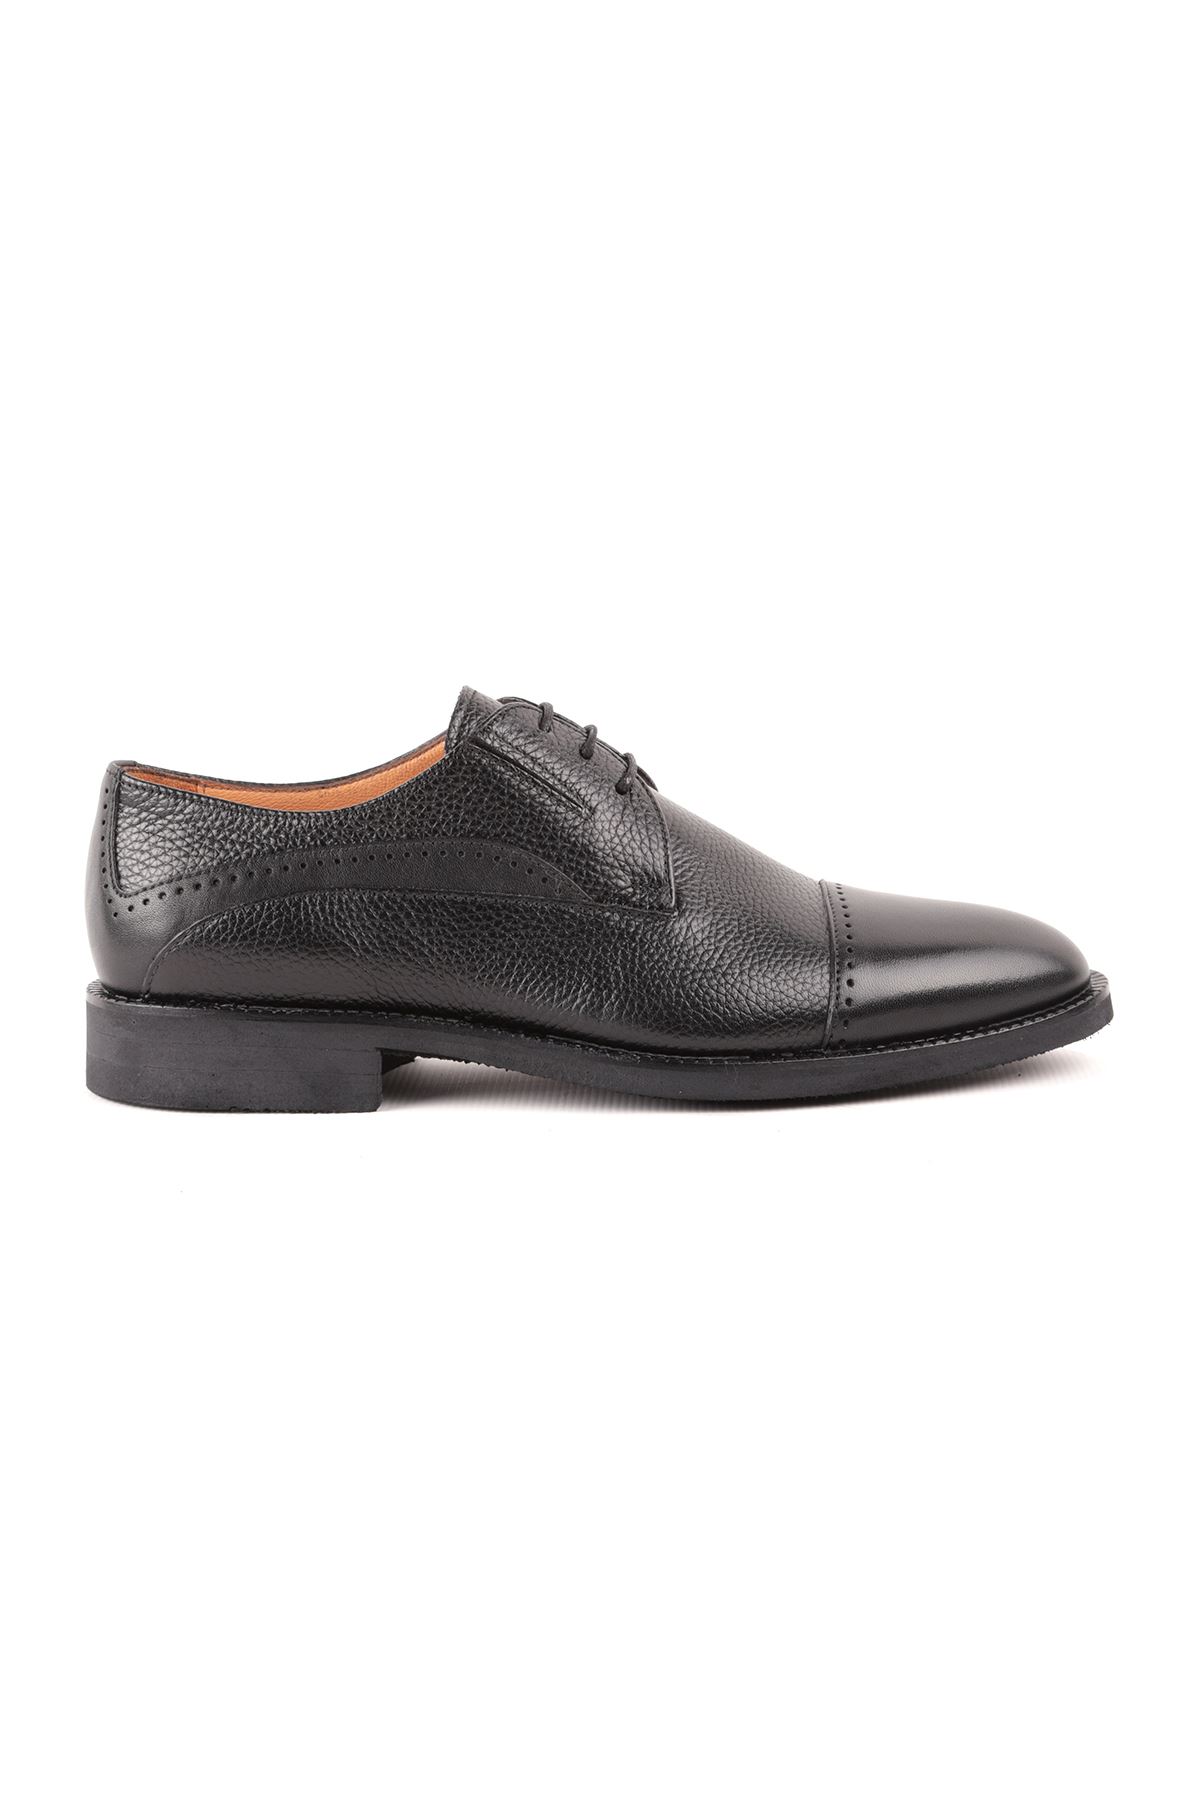 Libero L4782 Siyah Deri Klasik Erkek Ayakkabı 